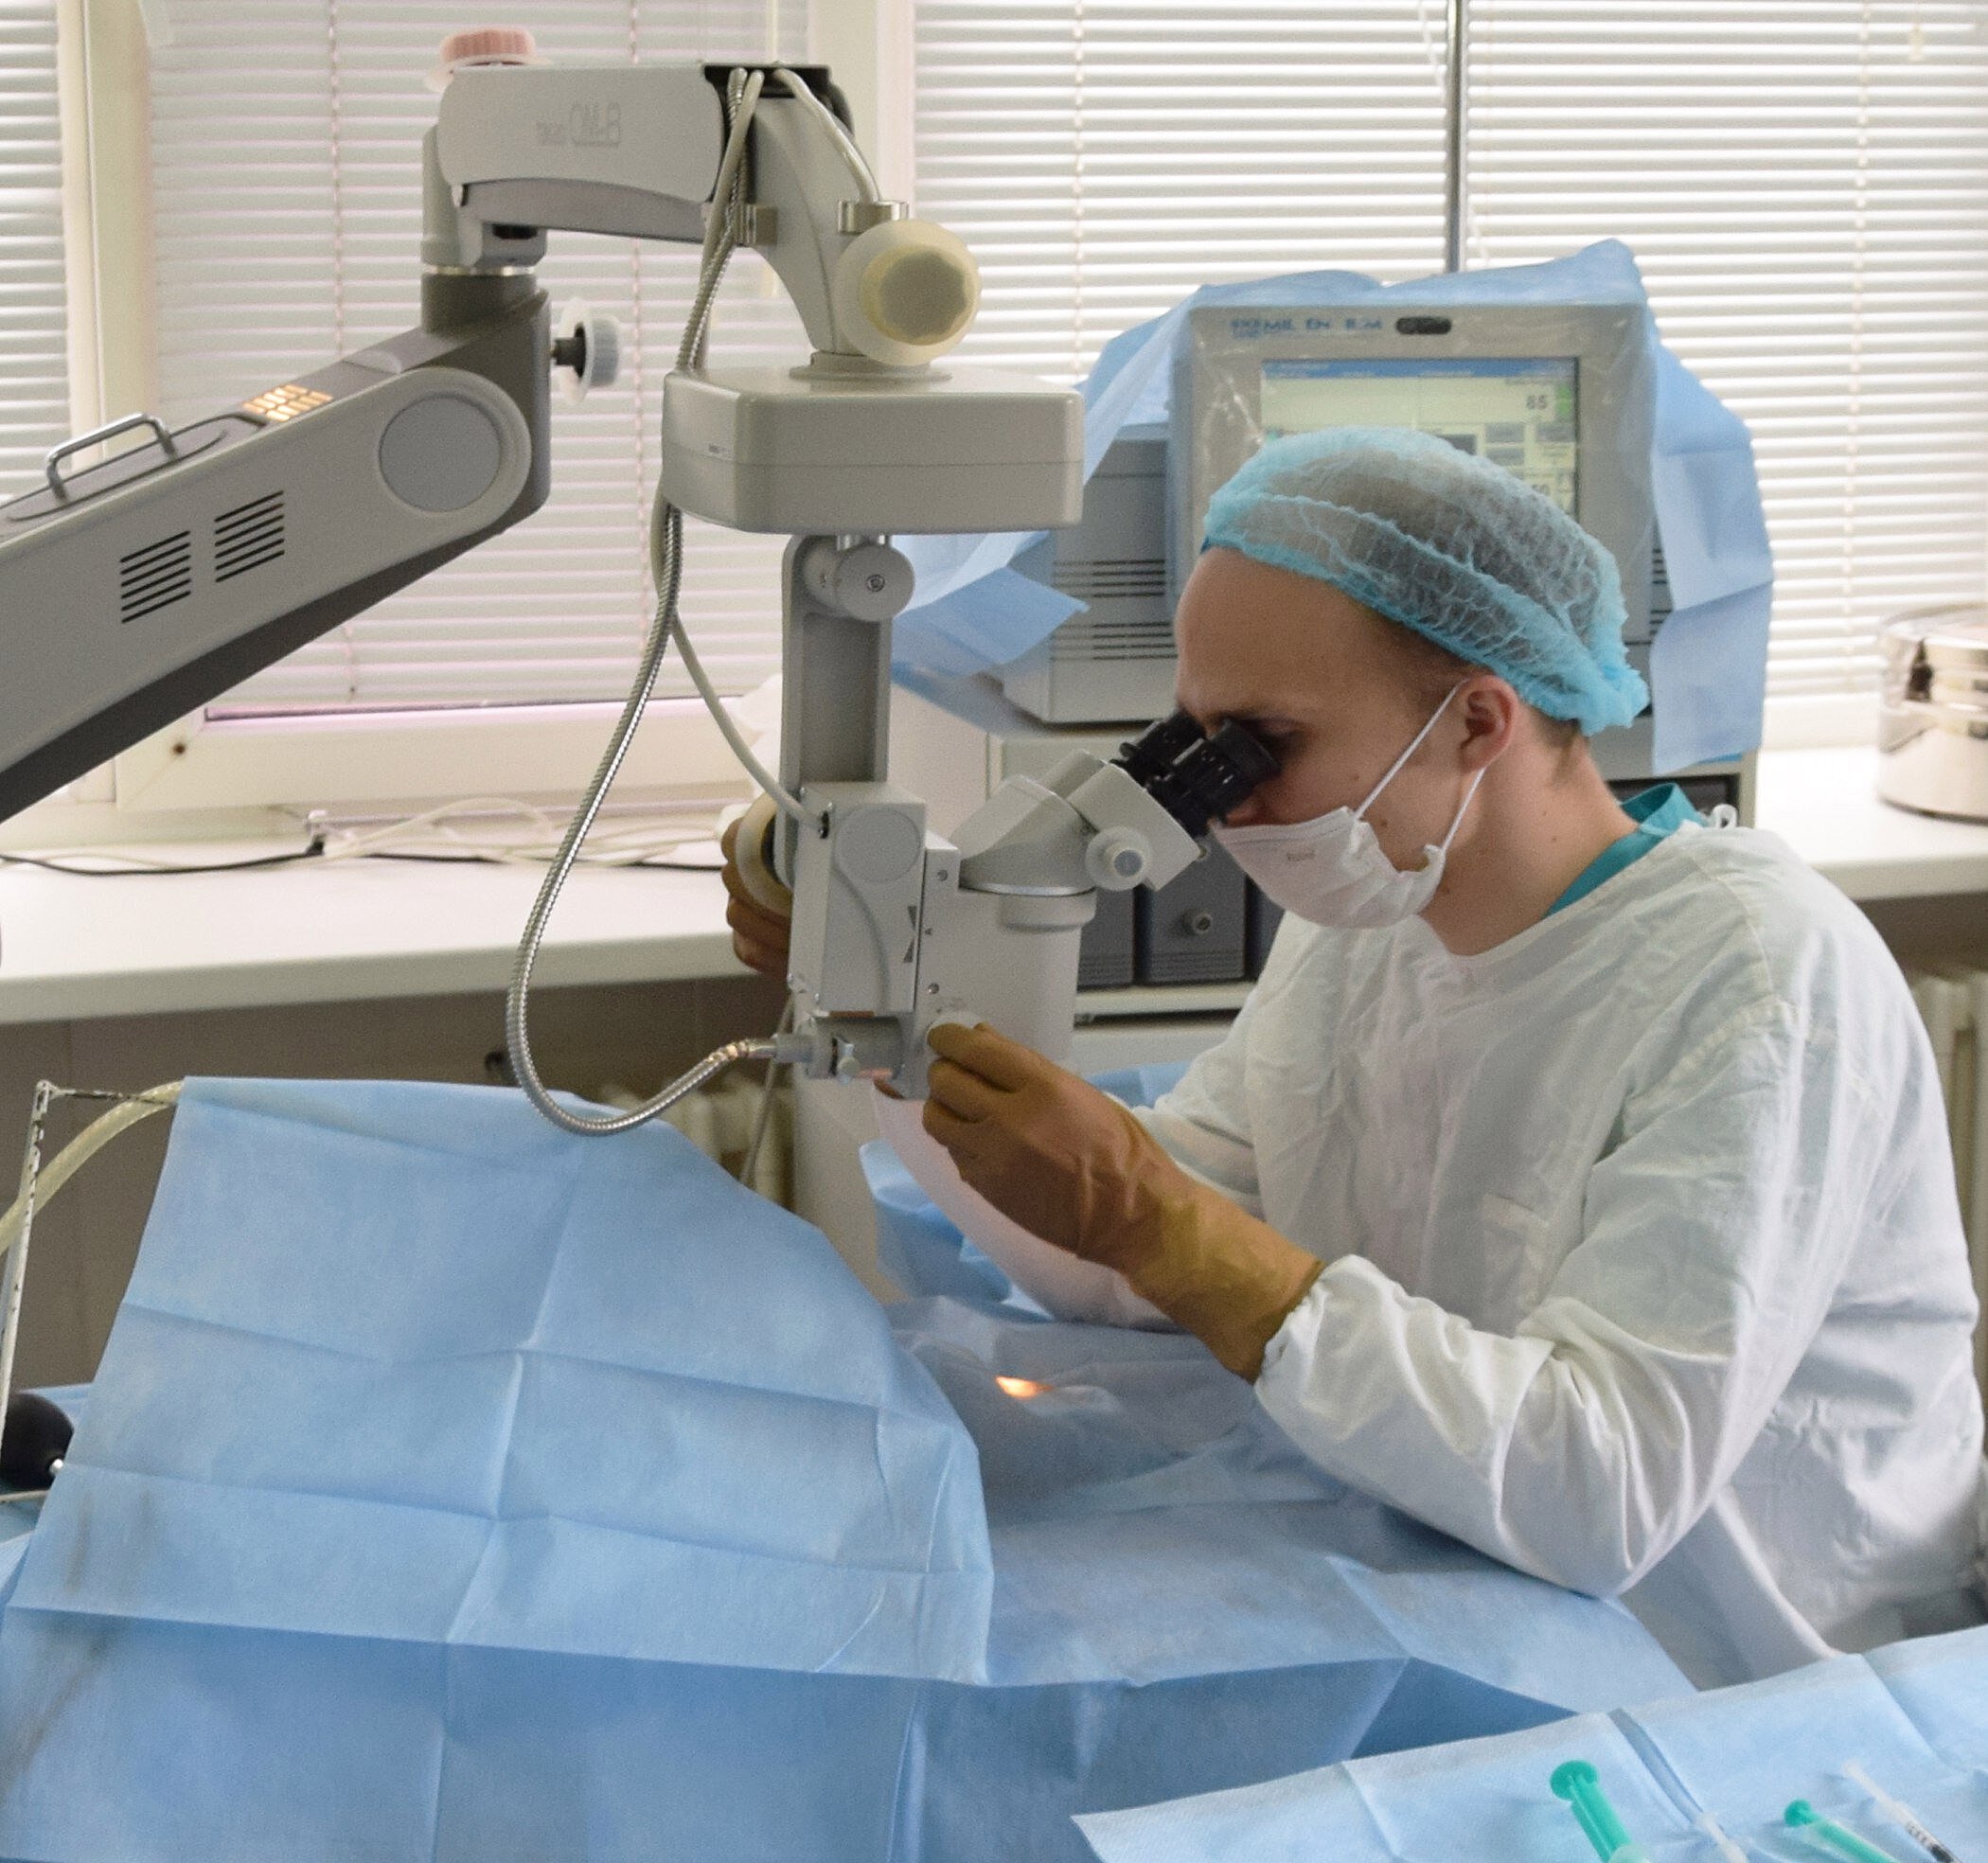 В Удмуртии врачи-офтальмологи вернули зрение пациенту после травмы циркулярной пилой